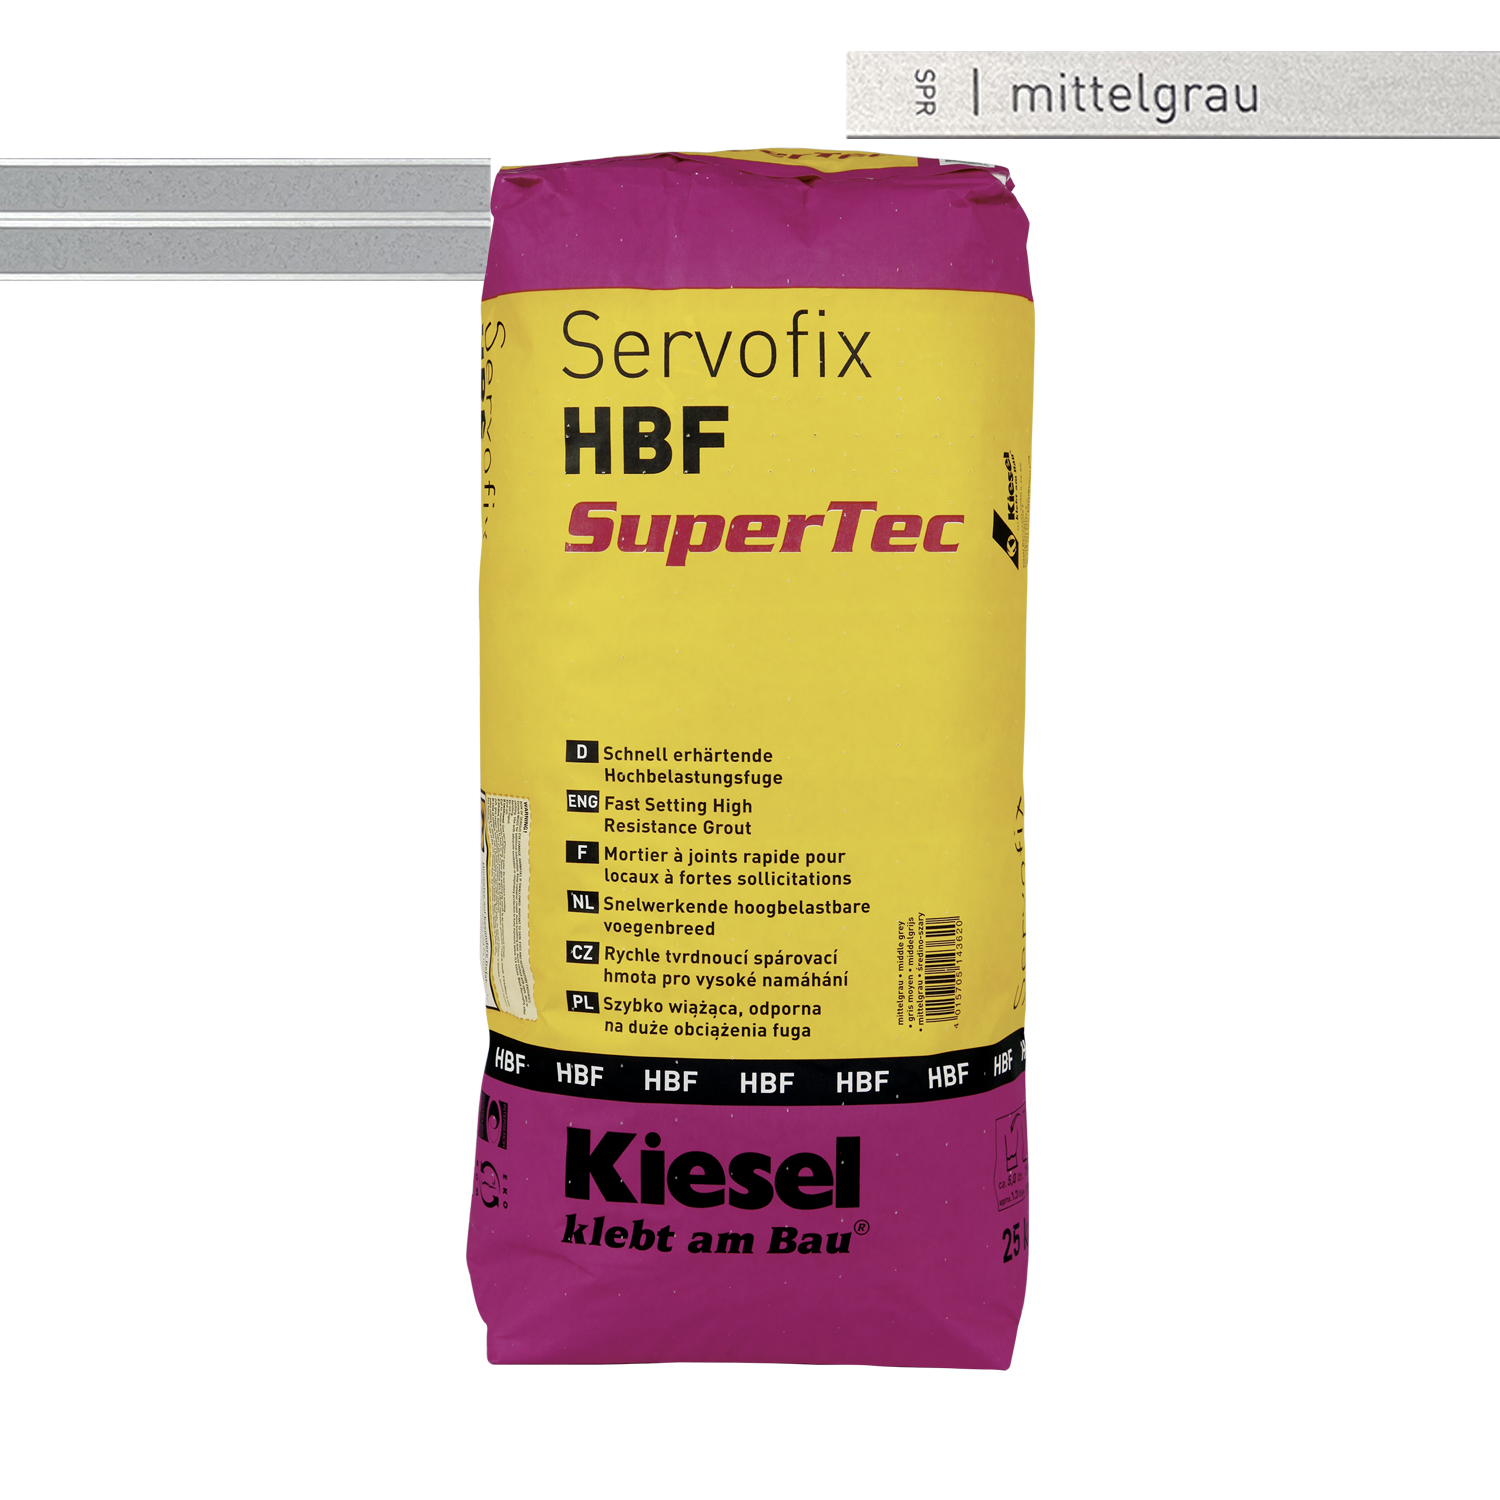 Flisemørtel til gulvfliser, vægfliser og mosaikfliser Servofix HBF SuperTec 25KG